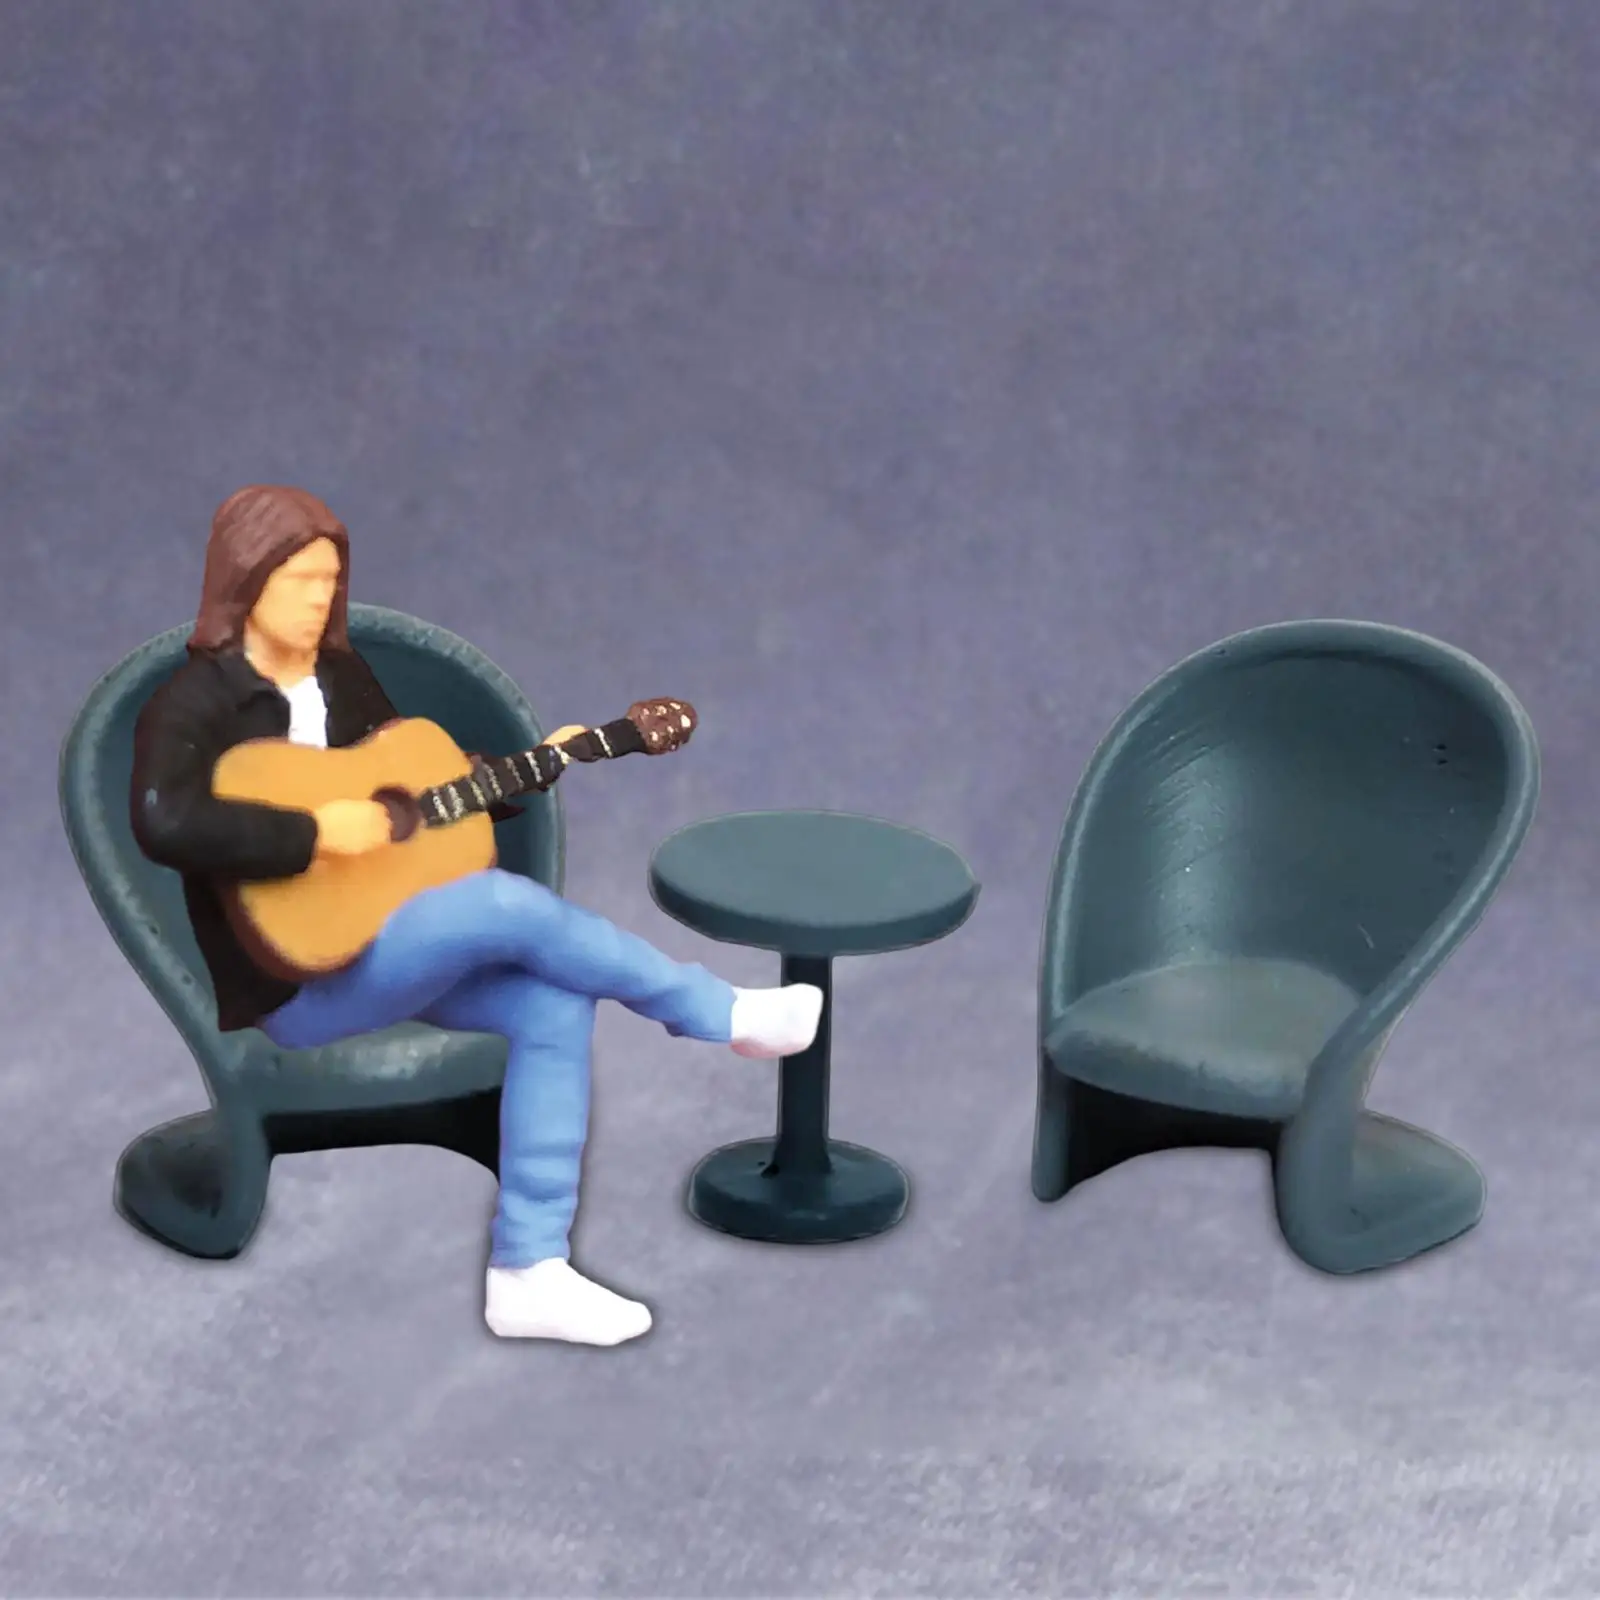 1/64 Scale Miniature Model Figures 1/64 Music Figures 1/64 Scale Music Figurine